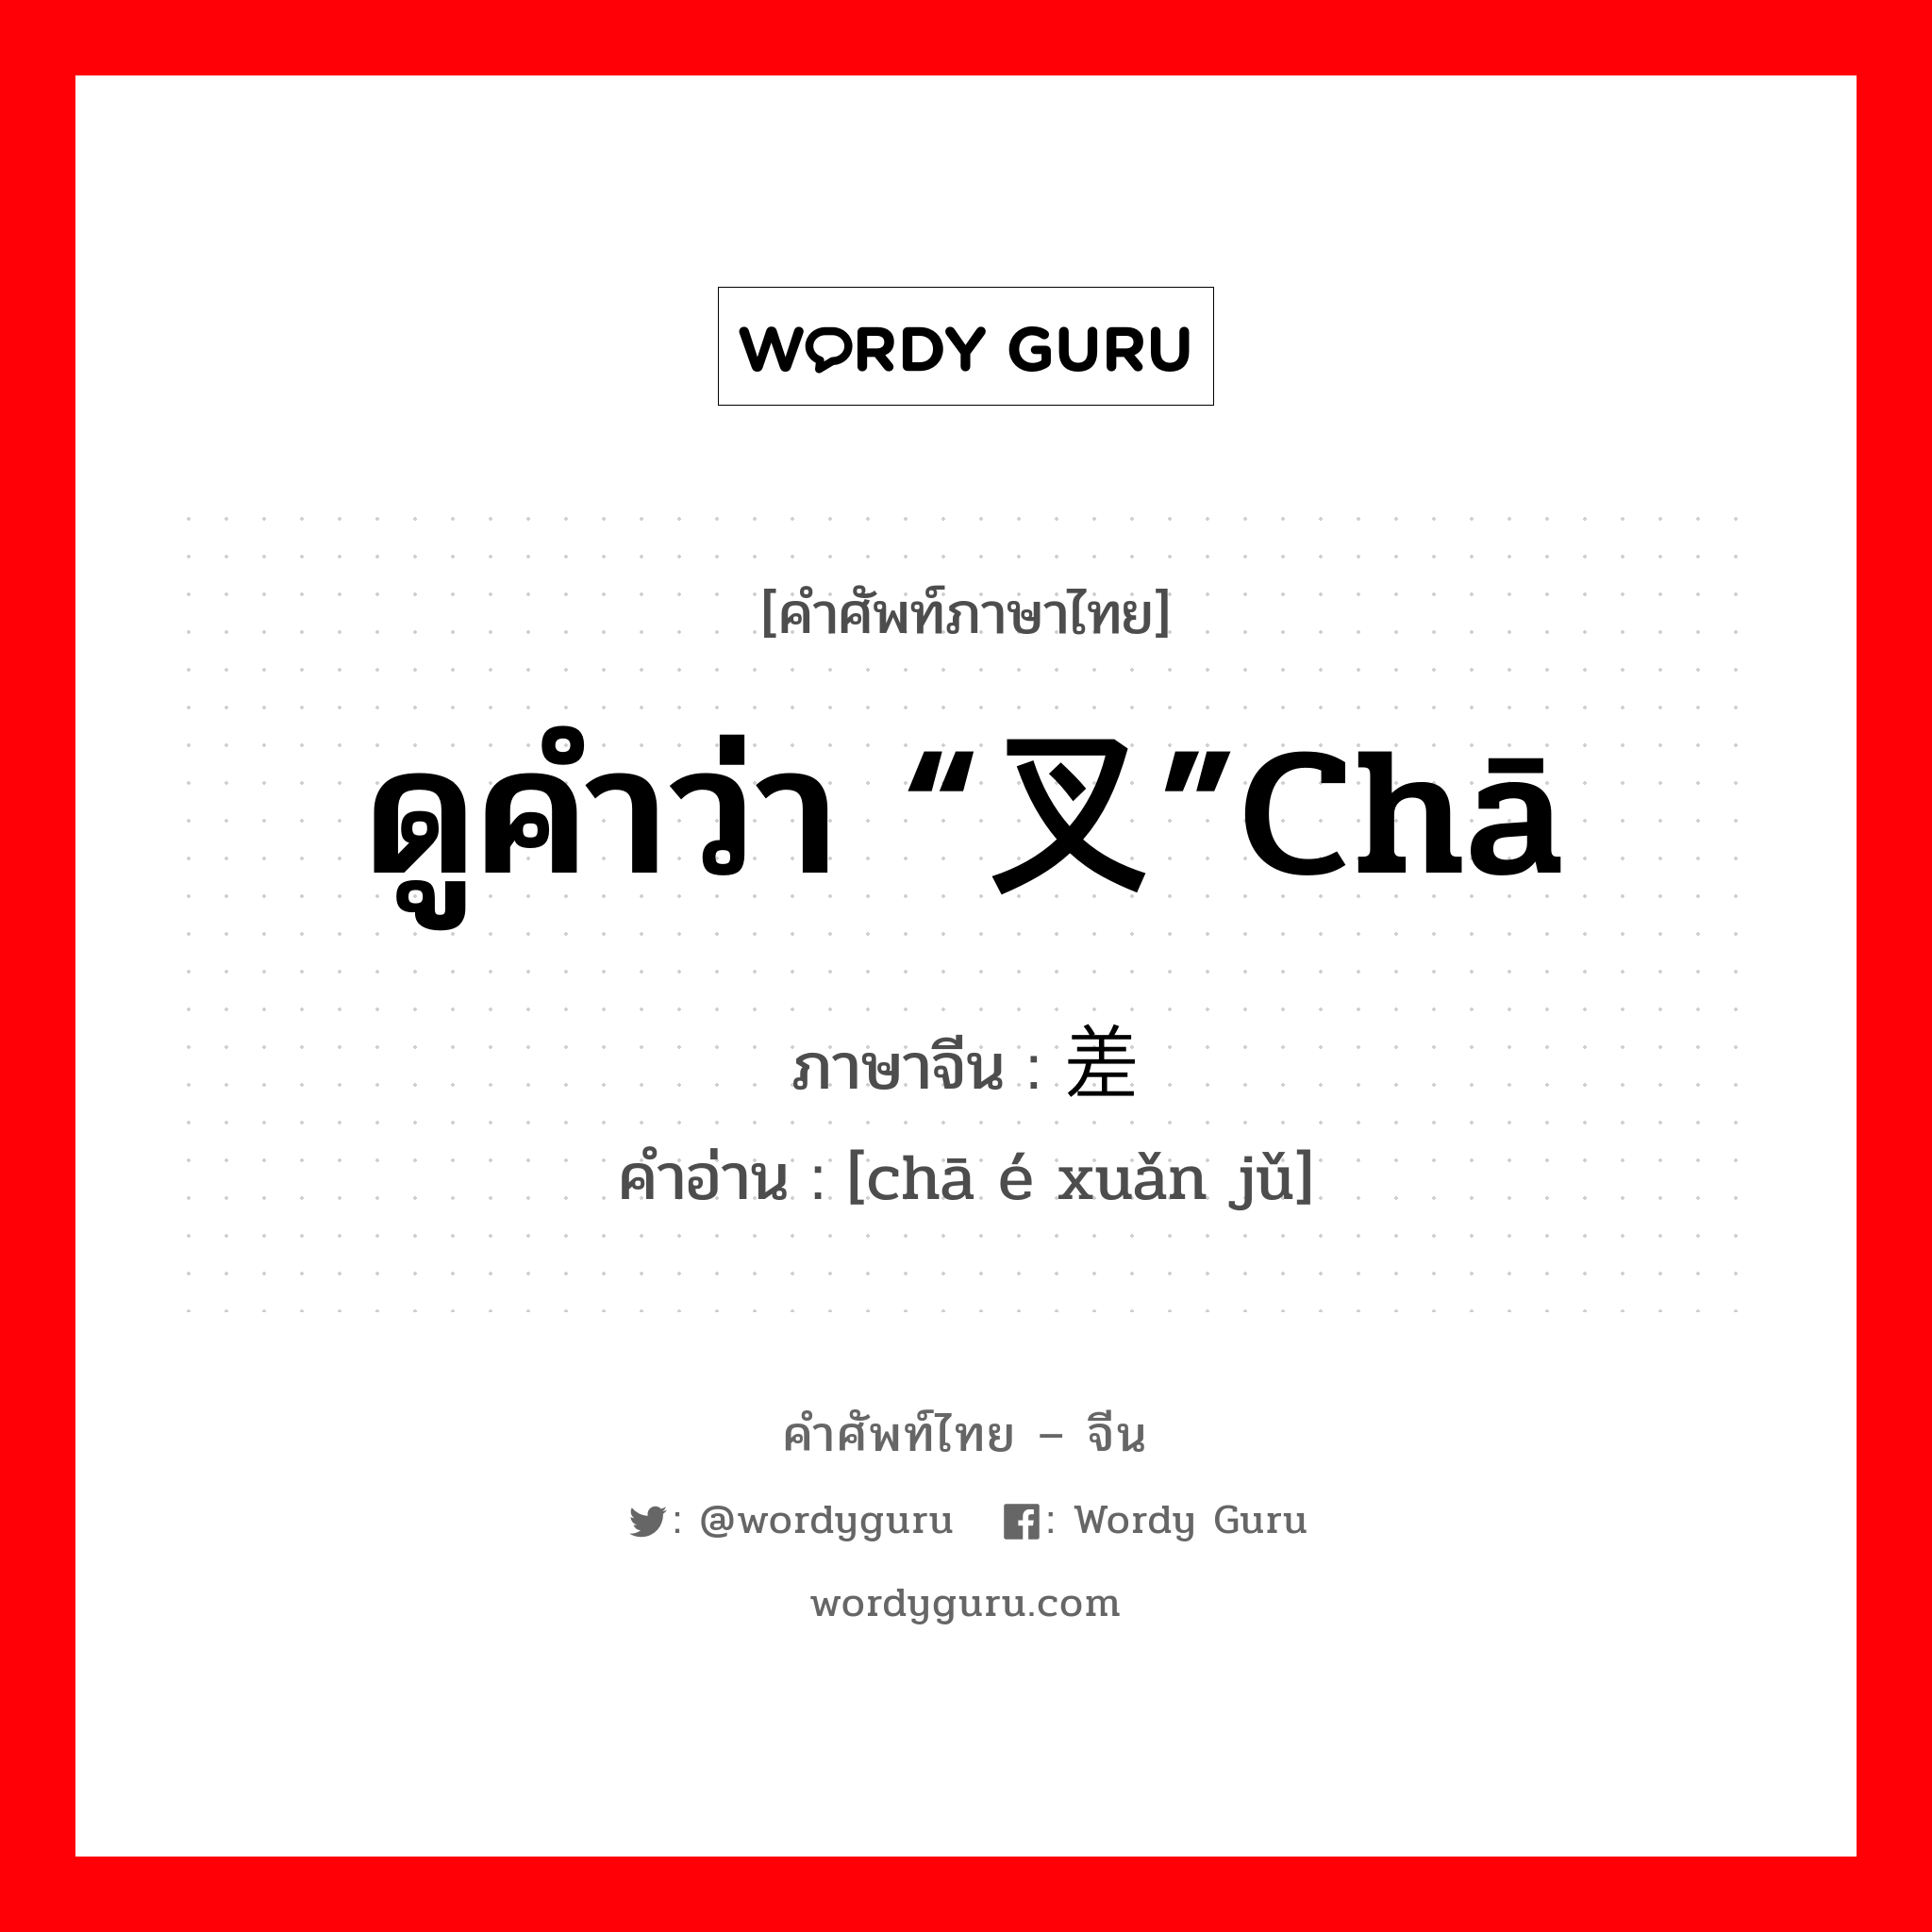 ดูคำว่า “叉”chā ภาษาจีนคืออะไร, คำศัพท์ภาษาไทย - จีน ดูคำว่า “叉”chā ภาษาจีน 差额选举 คำอ่าน [chā é xuǎn jǔ]